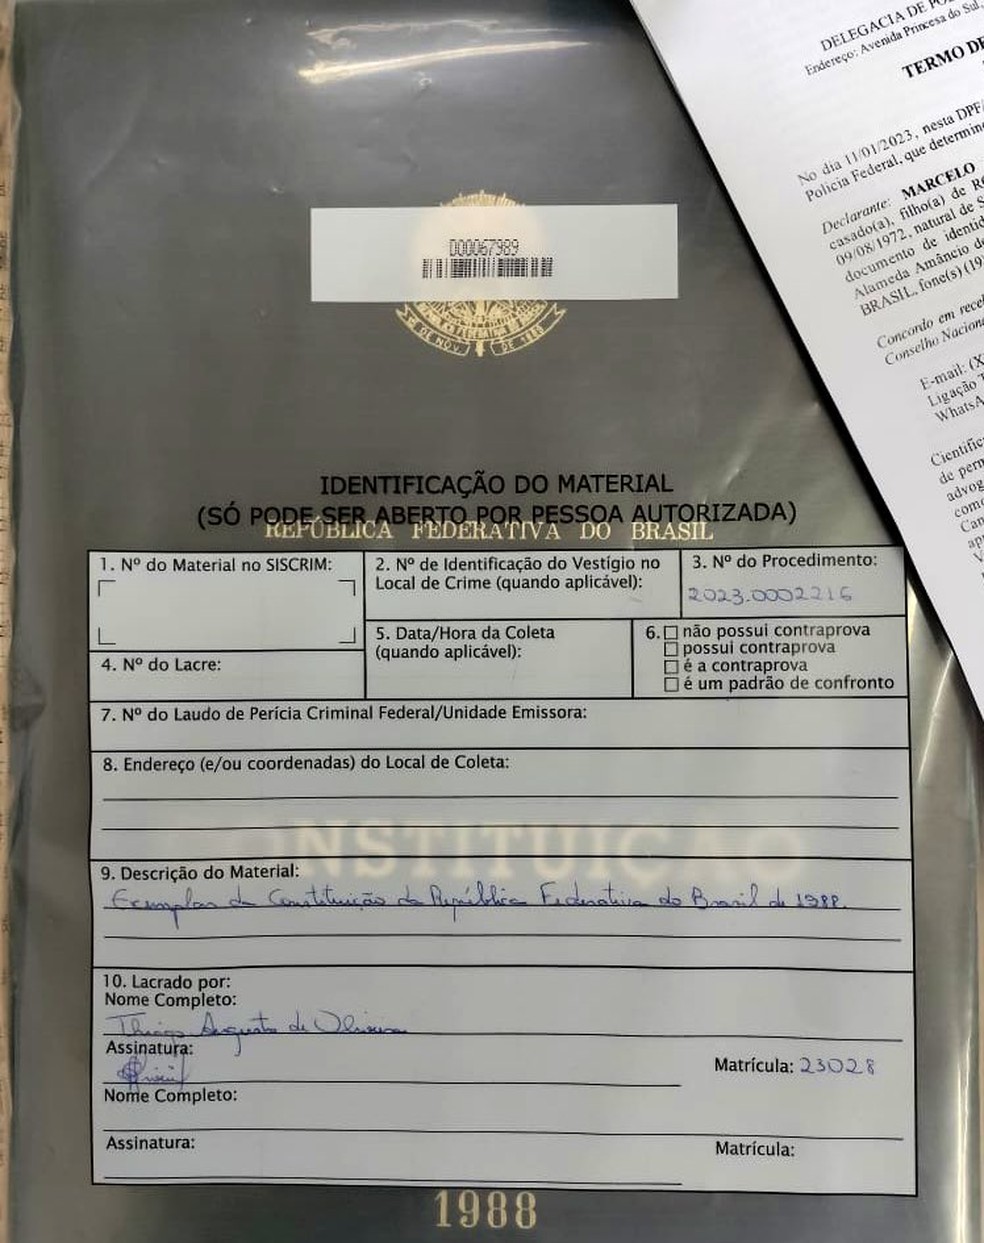 Réplica da Constituição de 1988 levada do STF durante ataques em Brasília é recuperada no Sul de MG — Foto: Reprodução/Twitter Flávio Dino